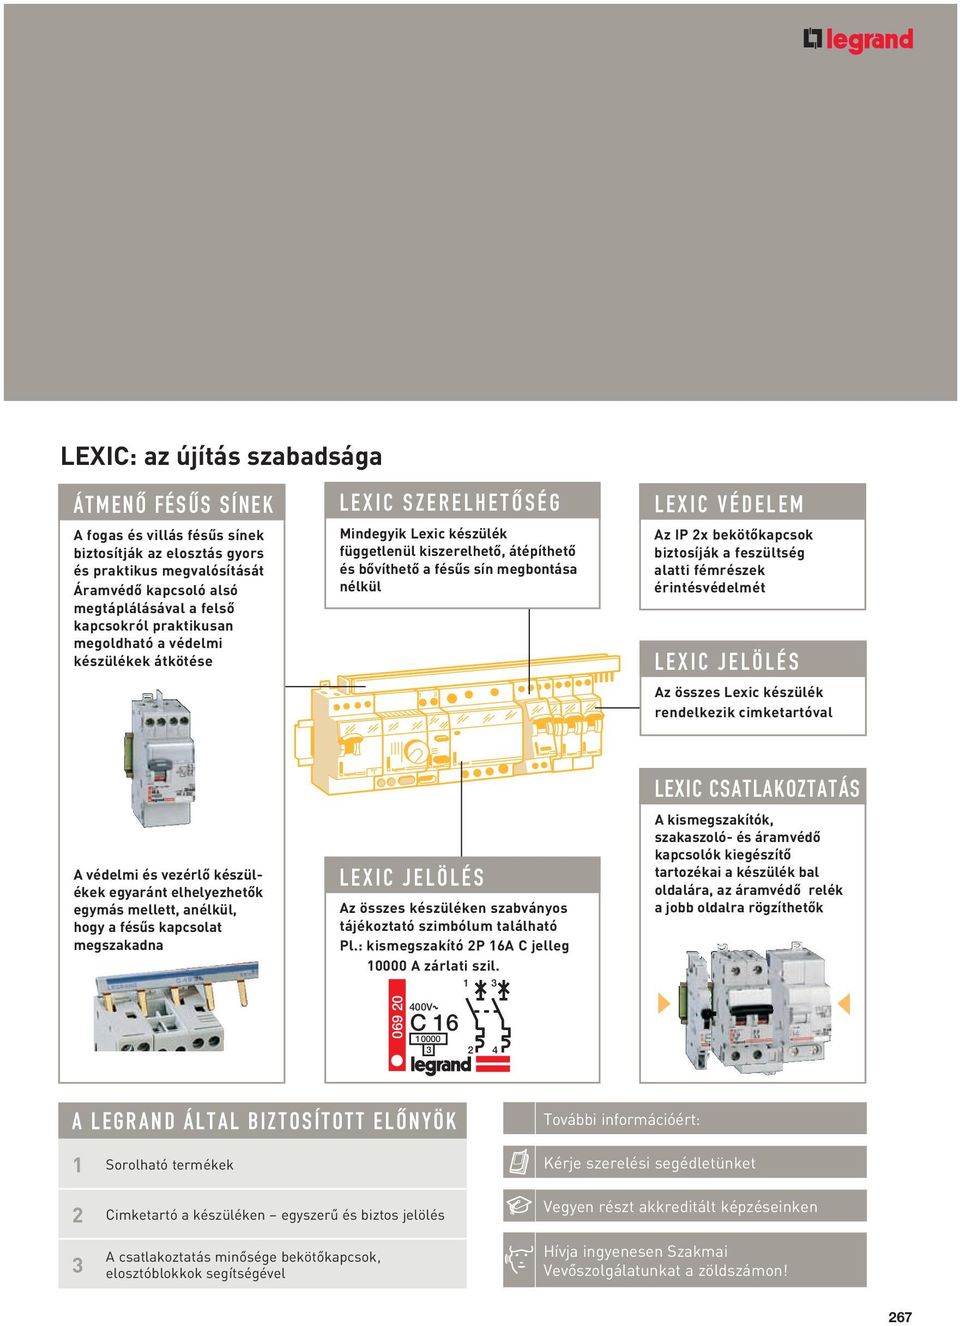 2x bekötôkapcsok biztosíják a feszültség alatti fémrészek érintésvédelmét LEXIC JELÖLÉS Az összes Lexic készülék rendelkezik cimketartóval A védelmi és vezérlô készülékek egyaránt elhelyezhetôk